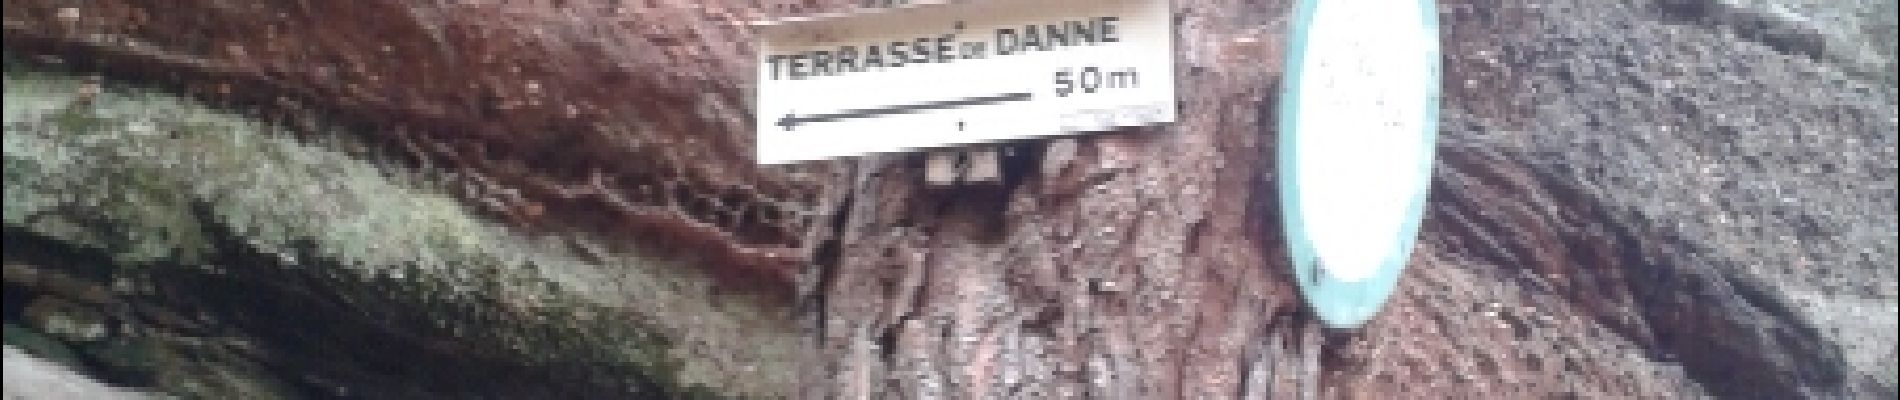 Point d'intérêt Danne-et-Quatre-Vents - terrasse de danne - Photo